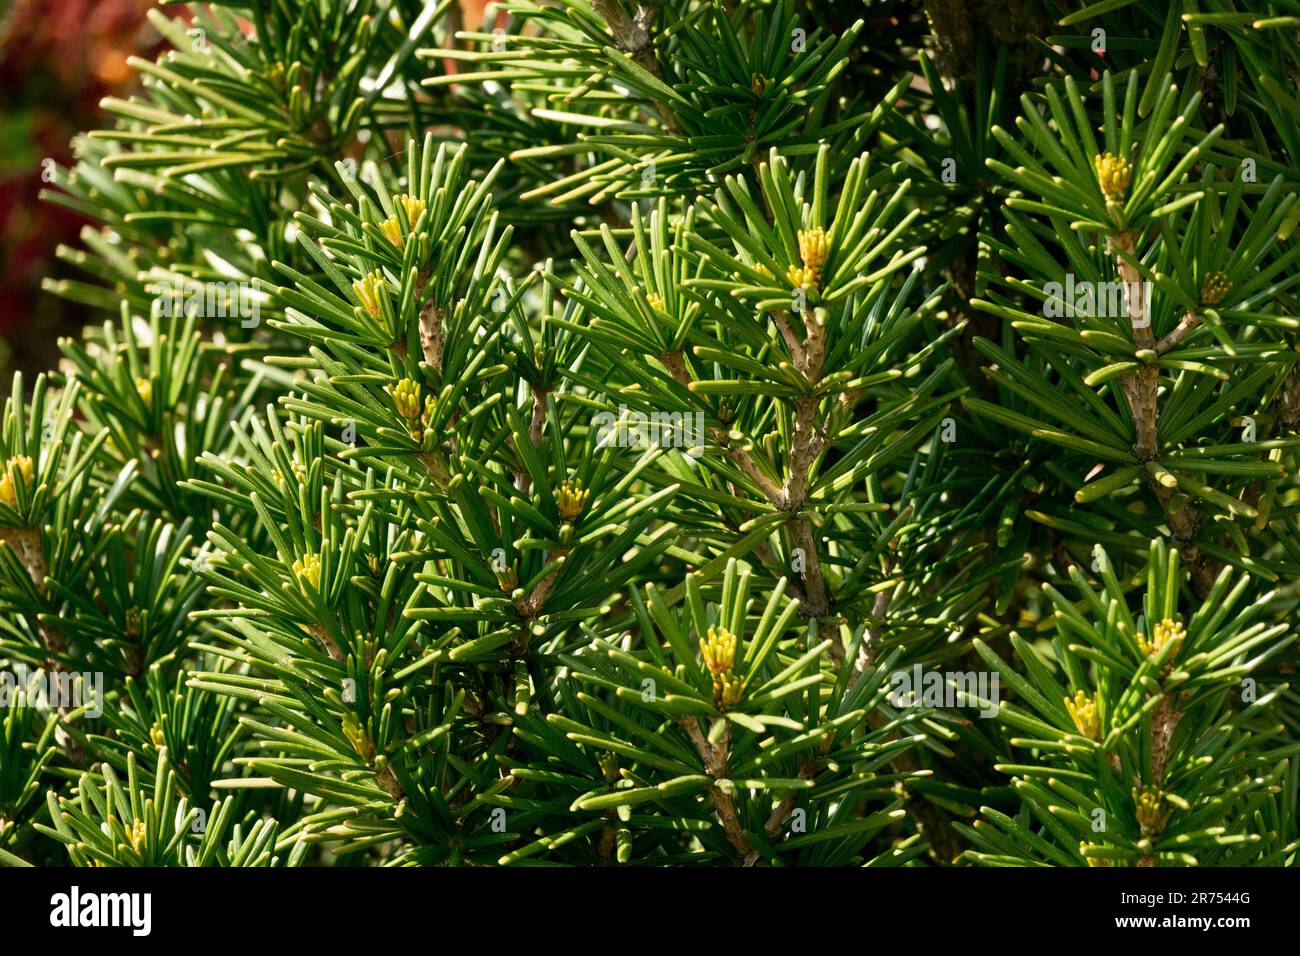 Parasol Fir, Koyamaki, Japanese Umbrella Pine, Sciadopitys verticillata 'Beauty Green' in Garden Stock Photo